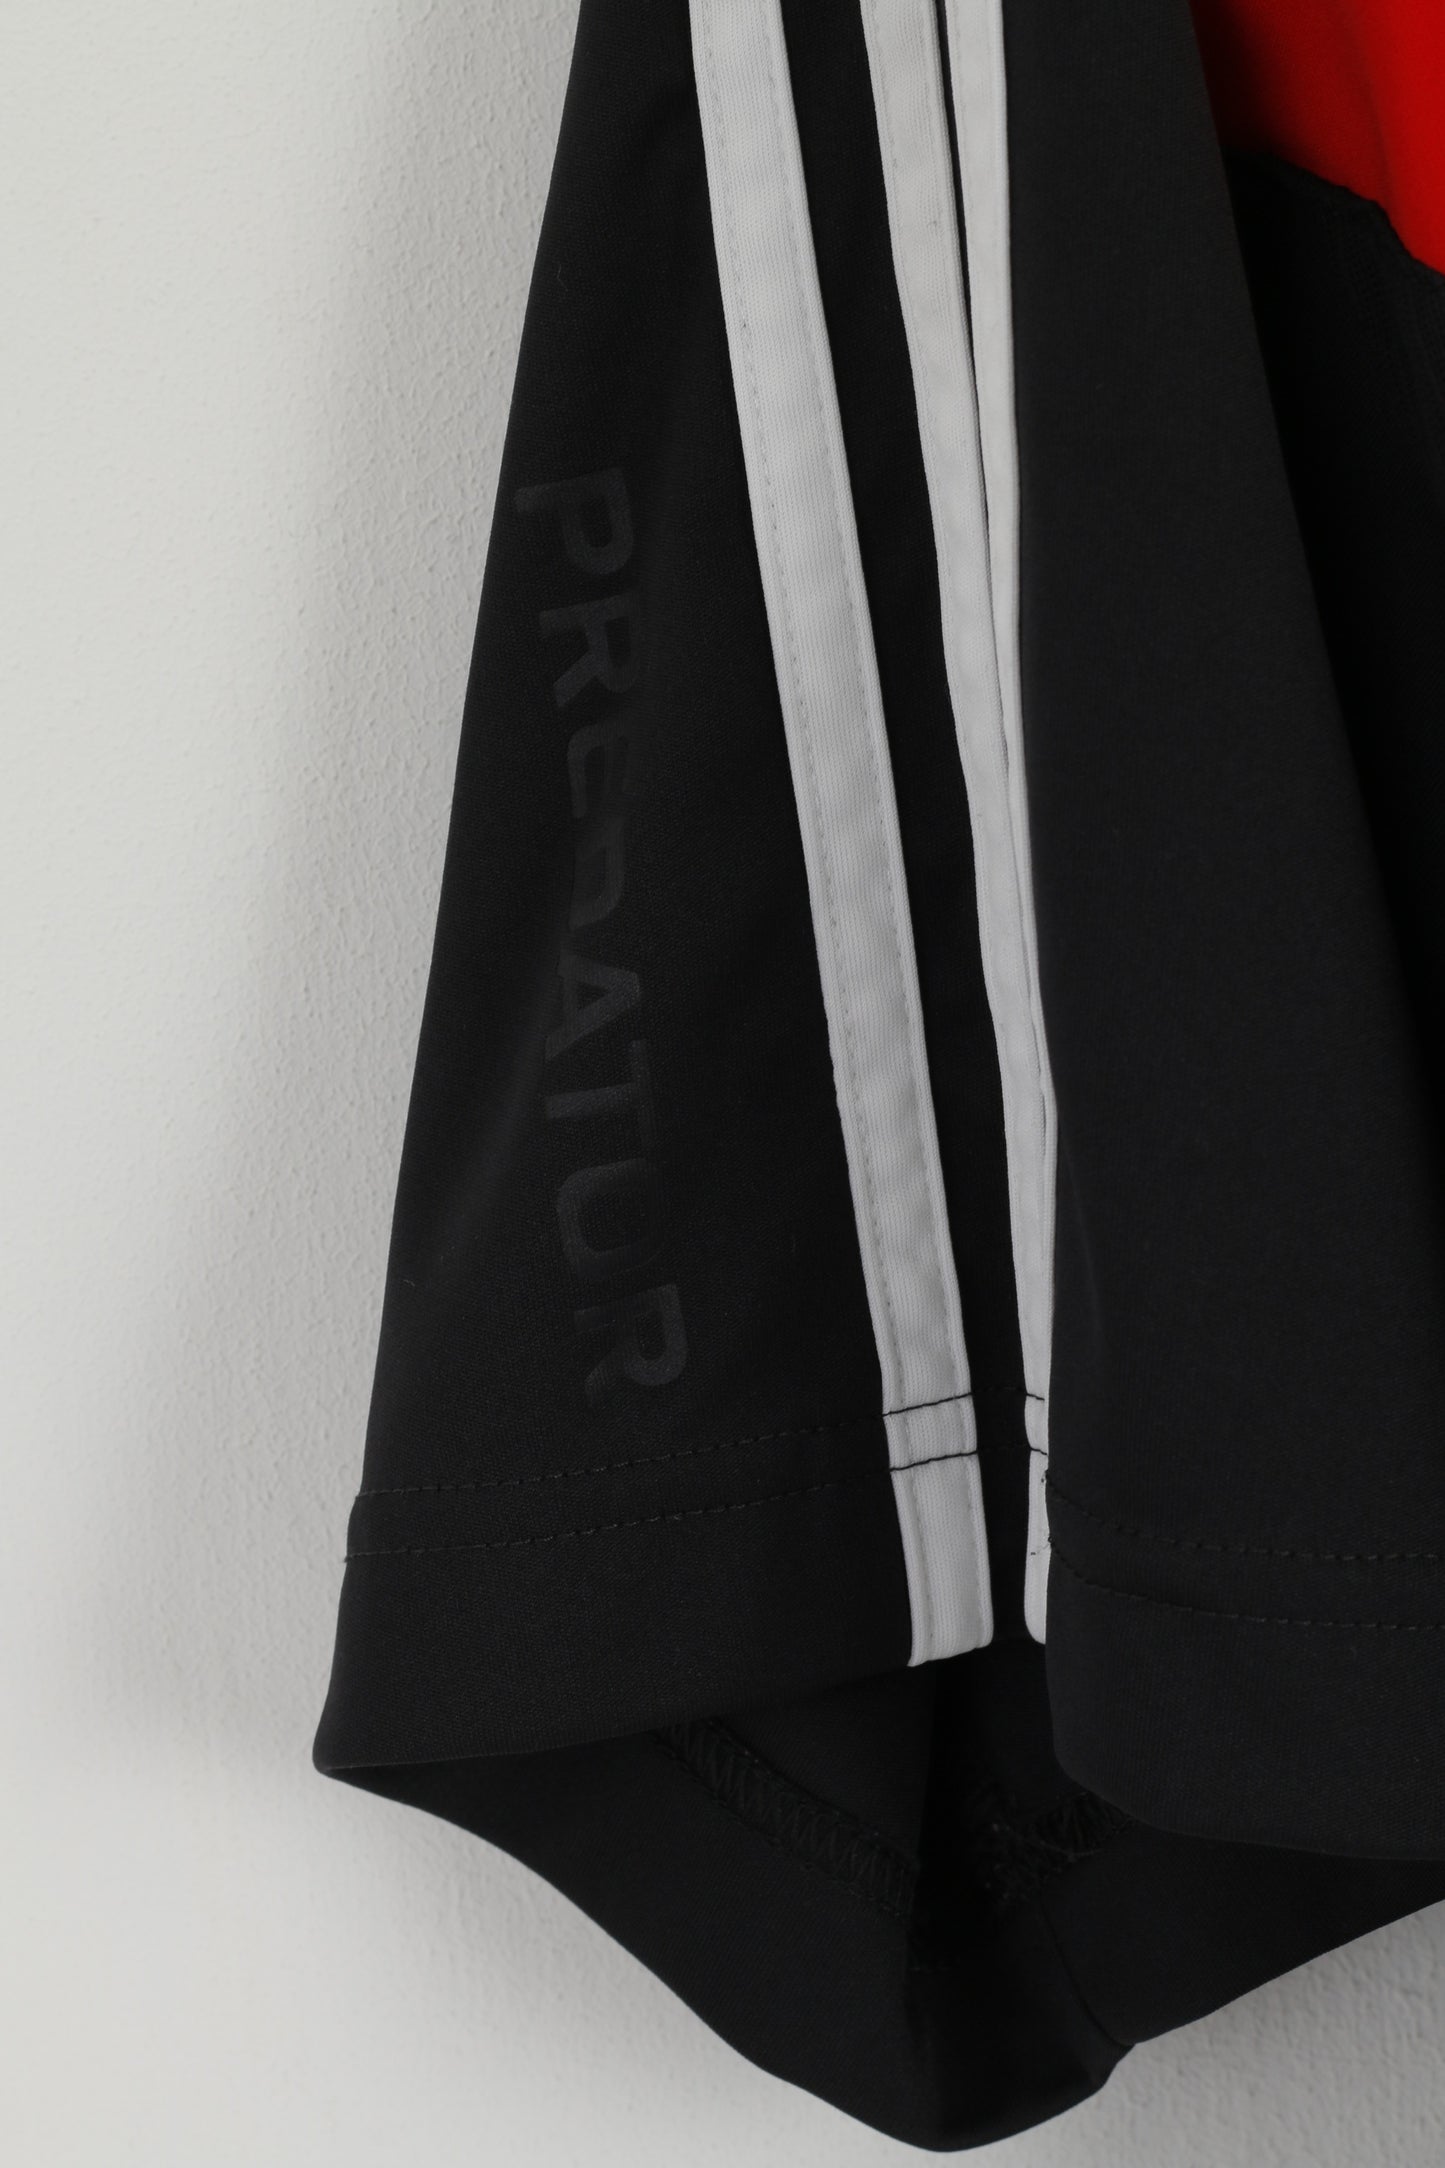 Maglia Adidas da uomo L nera Predator Football Climacool Activewear Maglia sportiva